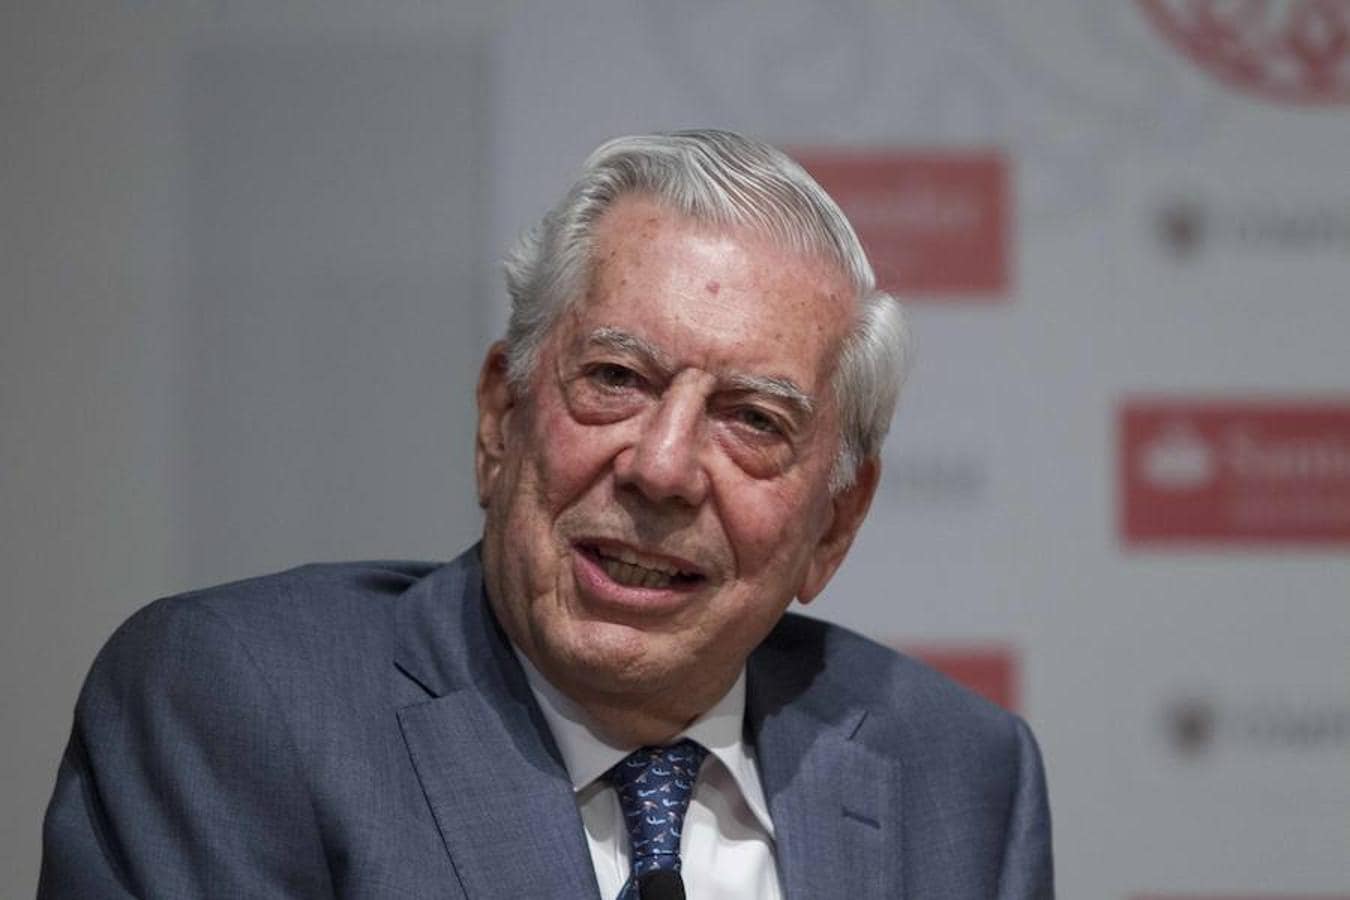 En el año 2010, Mario Vargas Llosa (Arequipa, Perú, 1936) se convirtió en el Nobel de todos los hispanohablantes. Mario Vargas Llosa es el undécimo autor en habla hispana que recibe este galardón. Gracias a él, nuestro idioma es el cuarto más representado en el palmarés del premio.